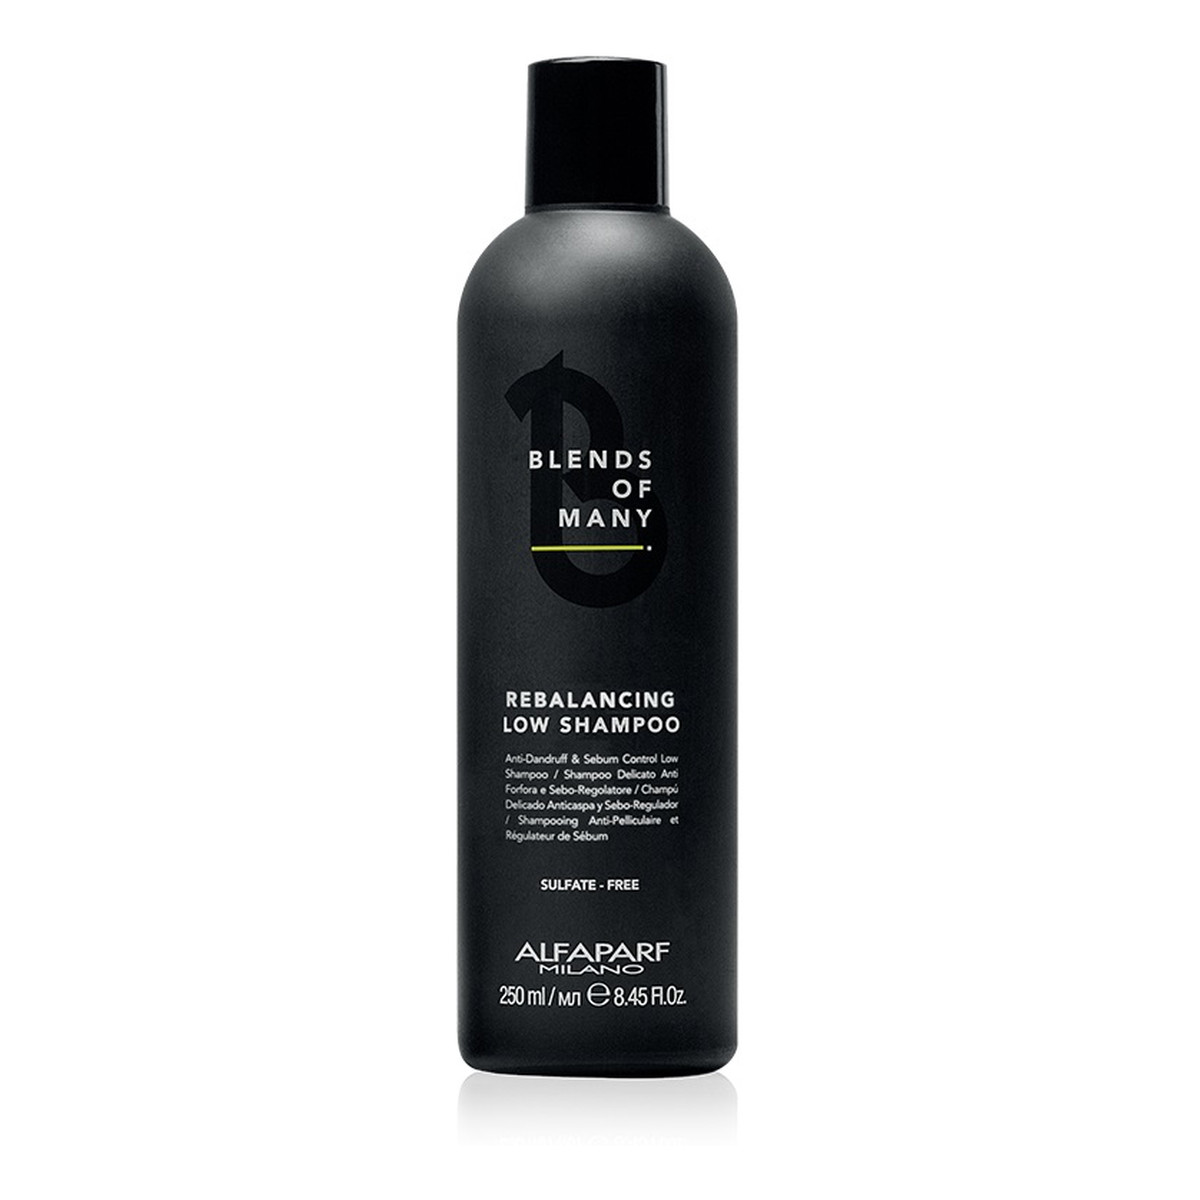 Alfaparf Blends of many rebalancing low shampoo szampon do włosów przywracający równowagę skórze głowy dla mężczyzn 250ml